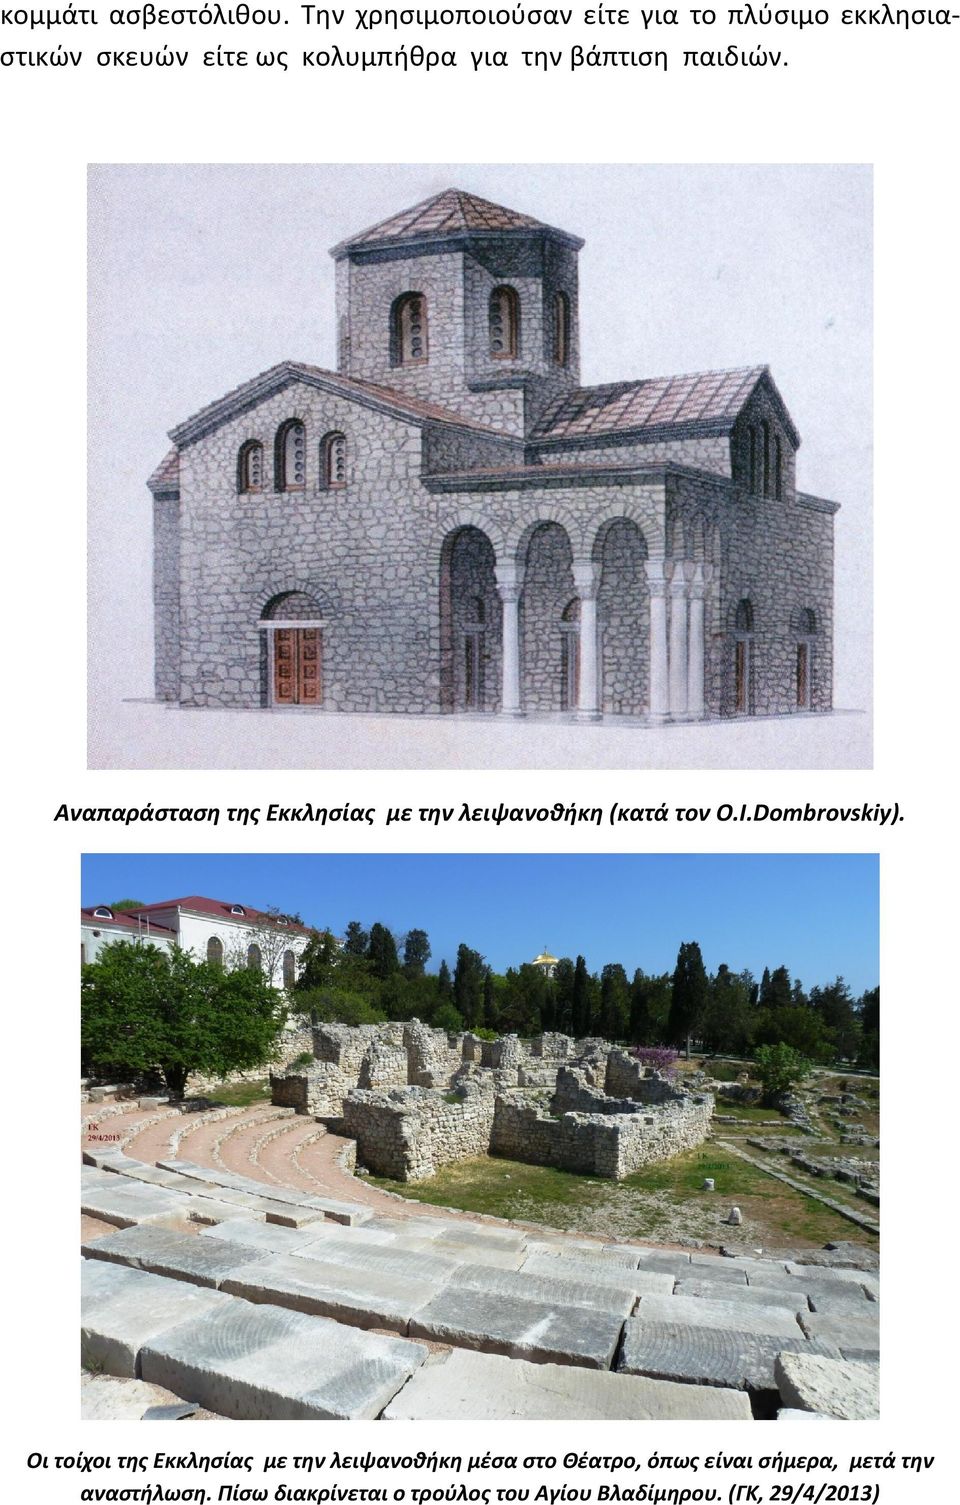 βάπτιση παιδιών. Αναπαράσταση της Εκκλησίας με την λειψανοθήκη (κατά τον O.I.Dombrovskiy).